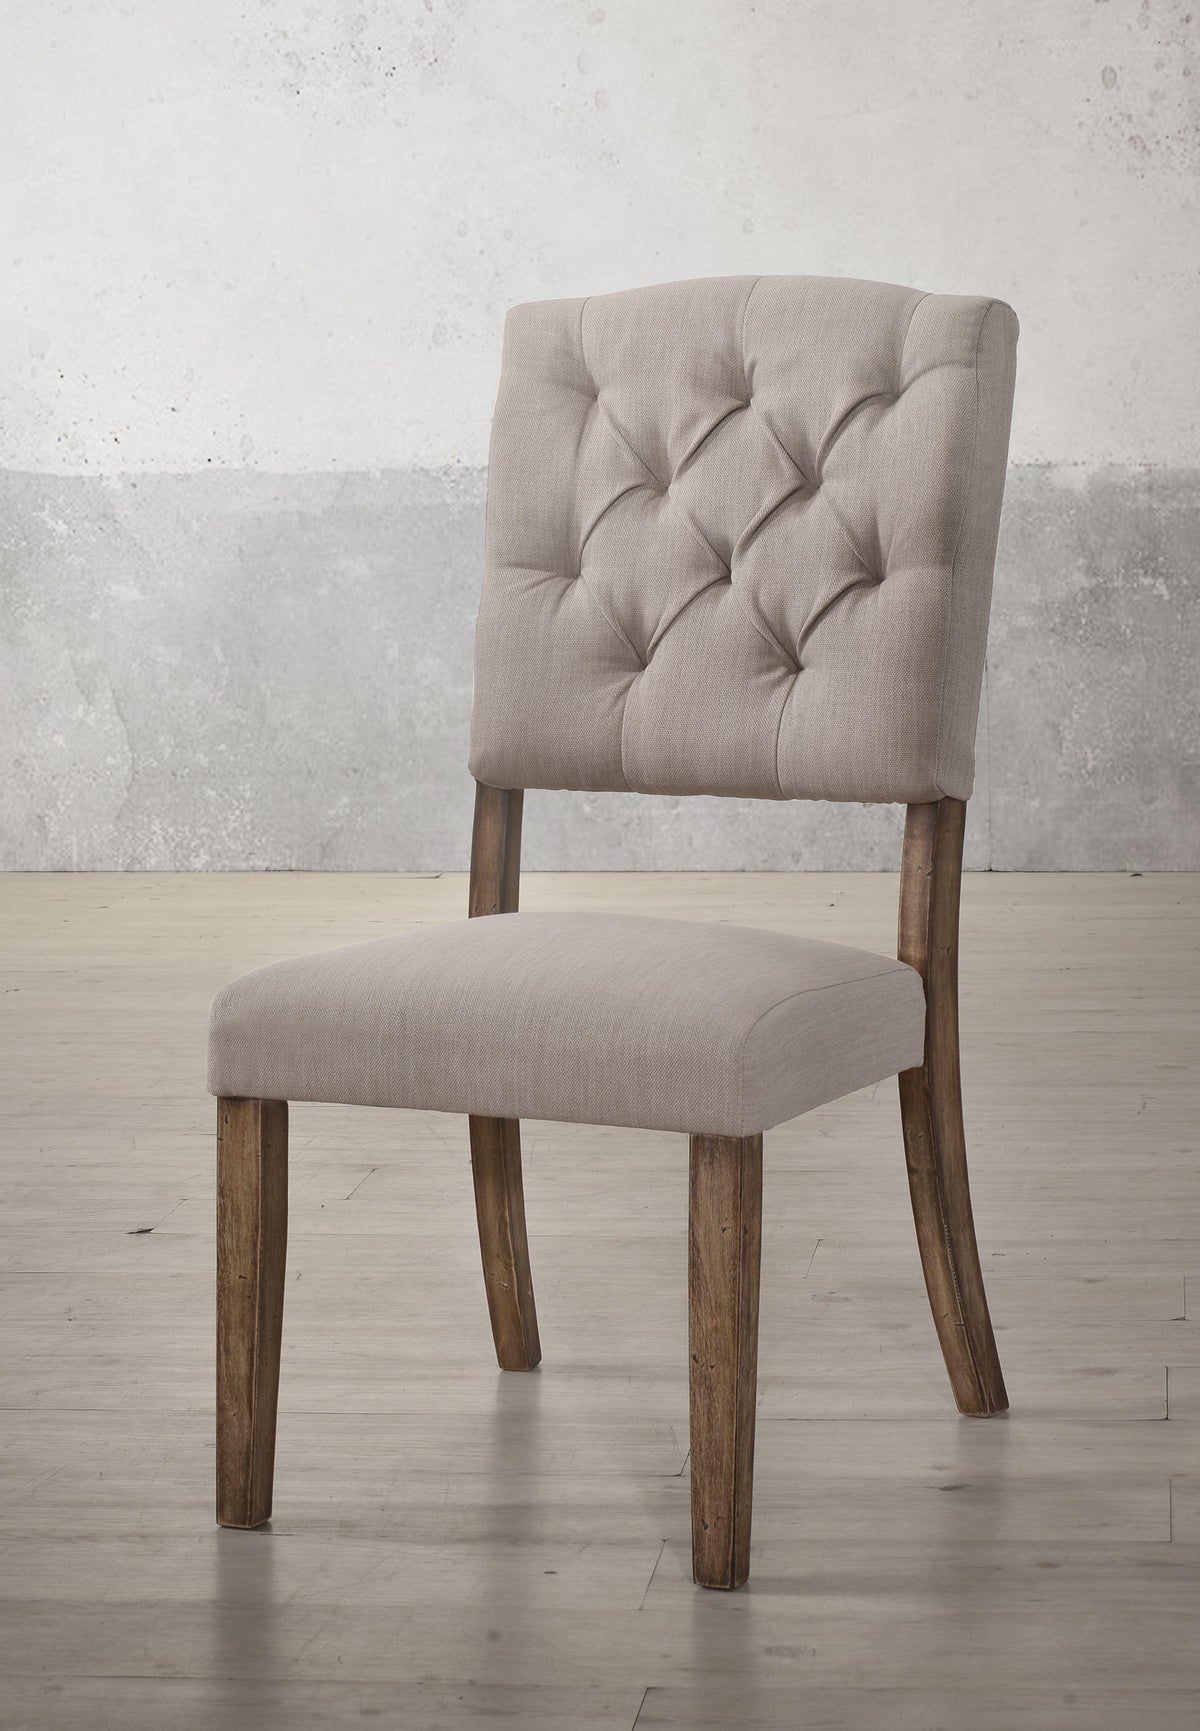 Bernard Cream Linen & Weathered Oak Side Chair  Las Vegas Furniture Stores